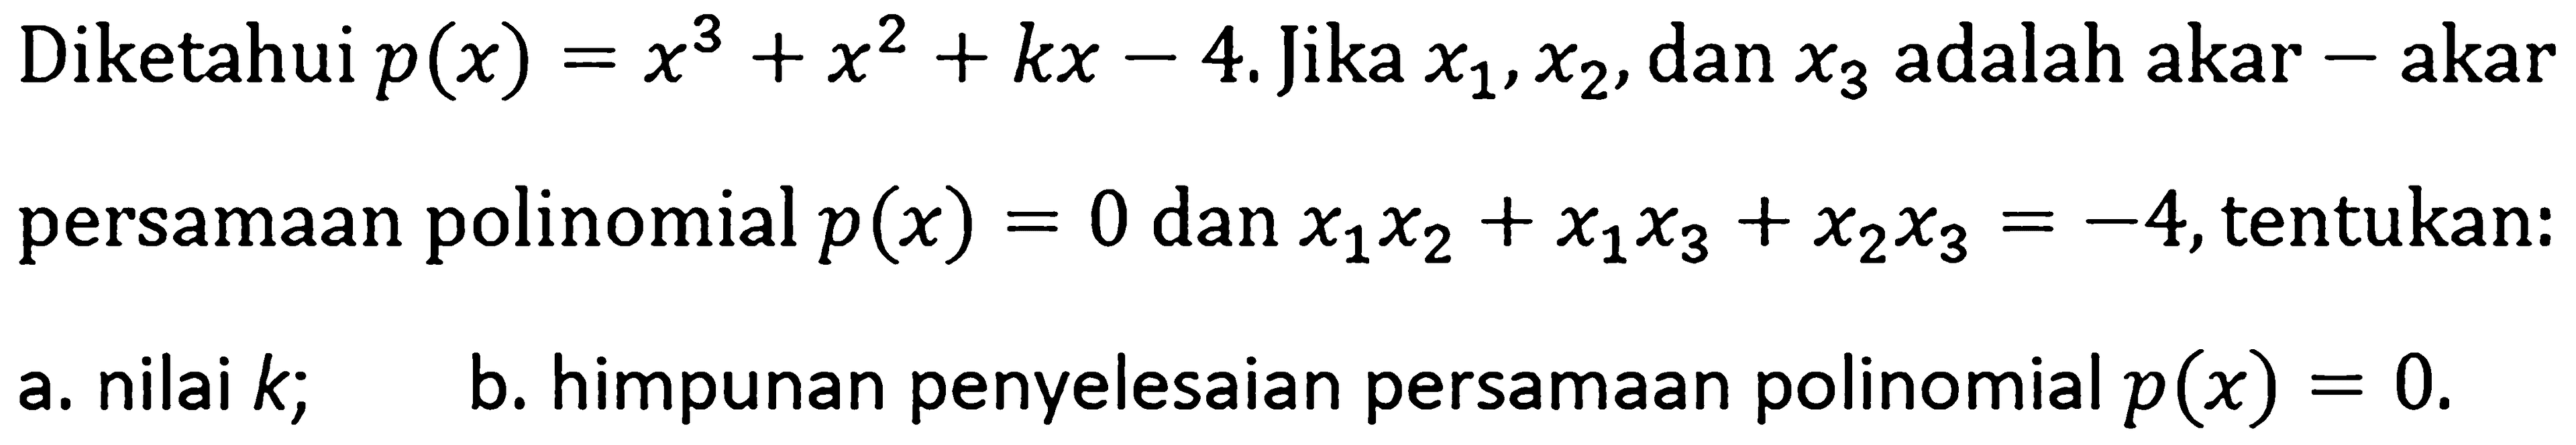 Diketahui p(x)=x^3+x^2+kx-4. Jika x1,x2, dan x3 adalah akar-akar persamaan polinomial p(x)=0 dan x1x2+x1x3+x2x3=-4, tentukan: a. nilai k; b. himpunan penyelesaian persamaan polinomial p(x)=0.